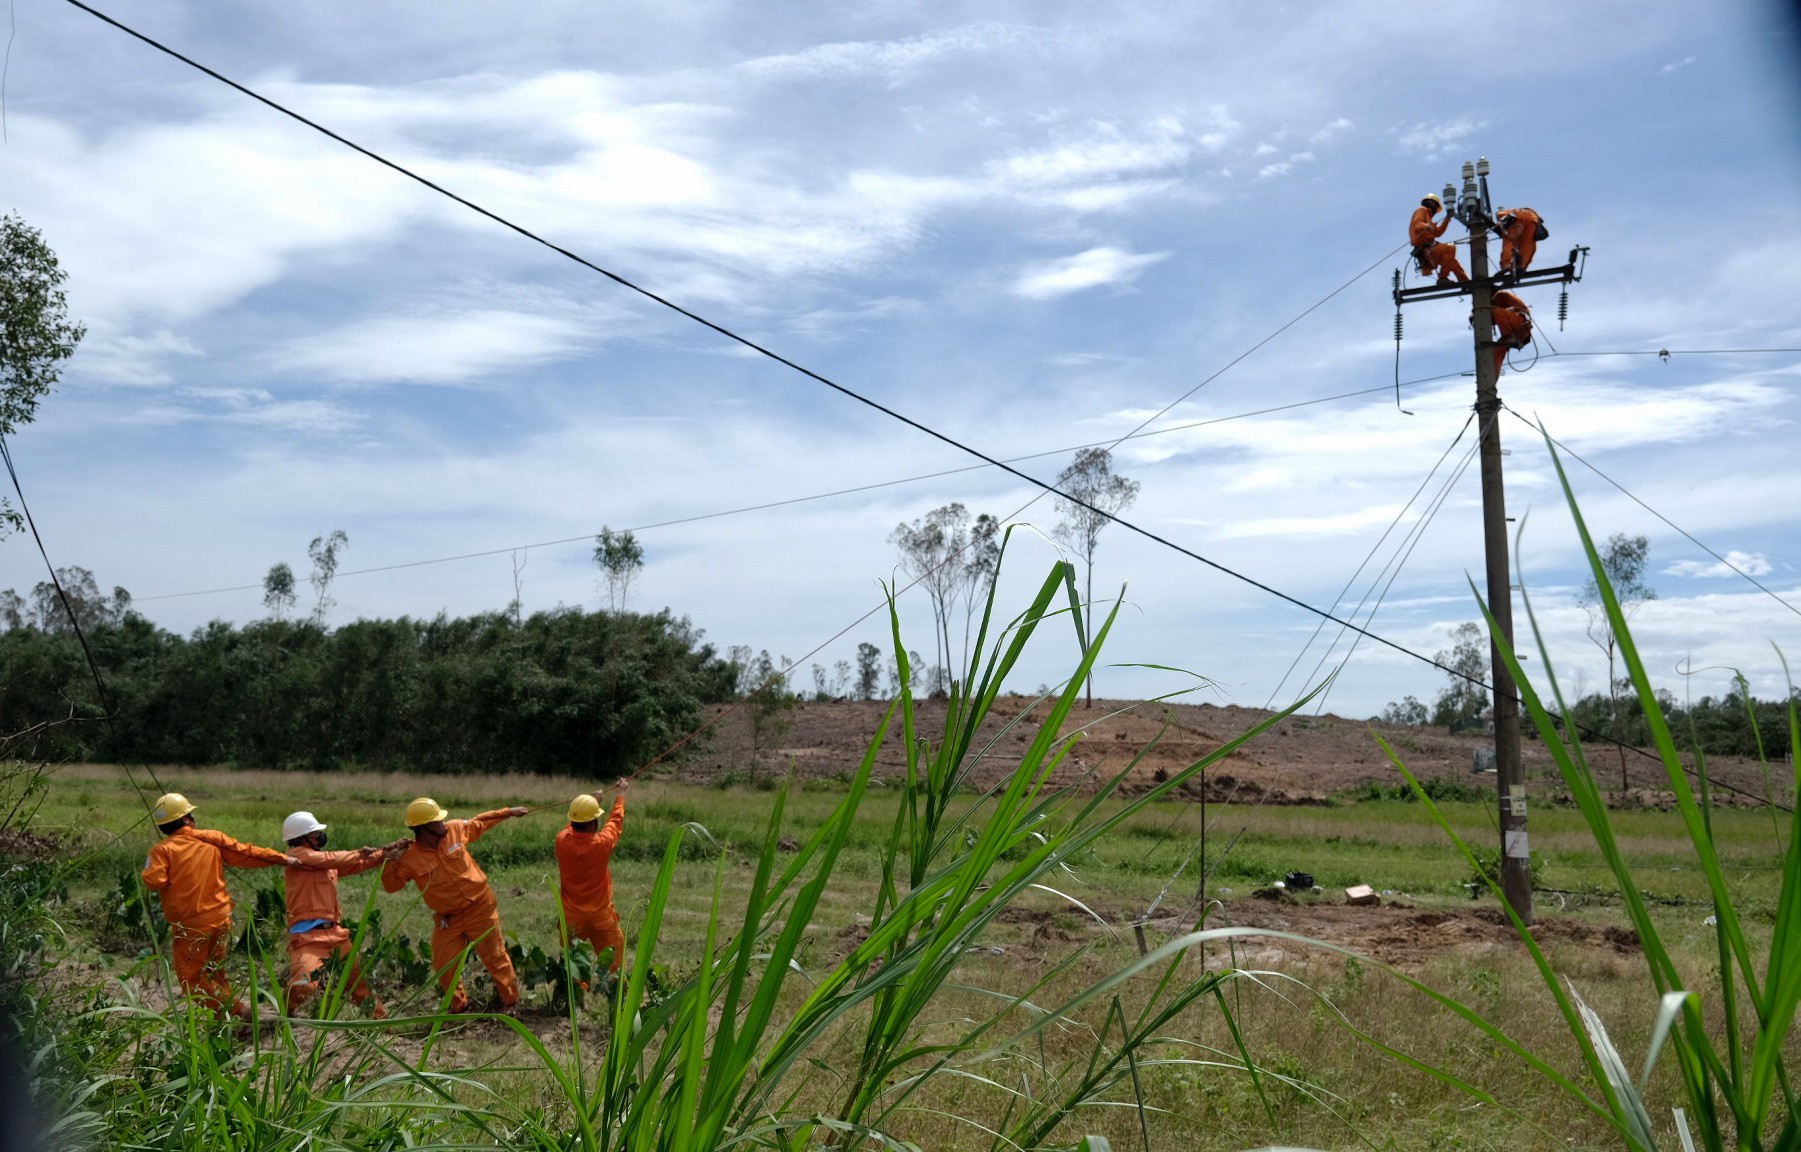 Công ty Điện lực Quảng Nam đã huy động tối đa nhân lực, phương tiện máy móc để phục vụ cho việc khôi phục lưới điện. Ảnh: P.C